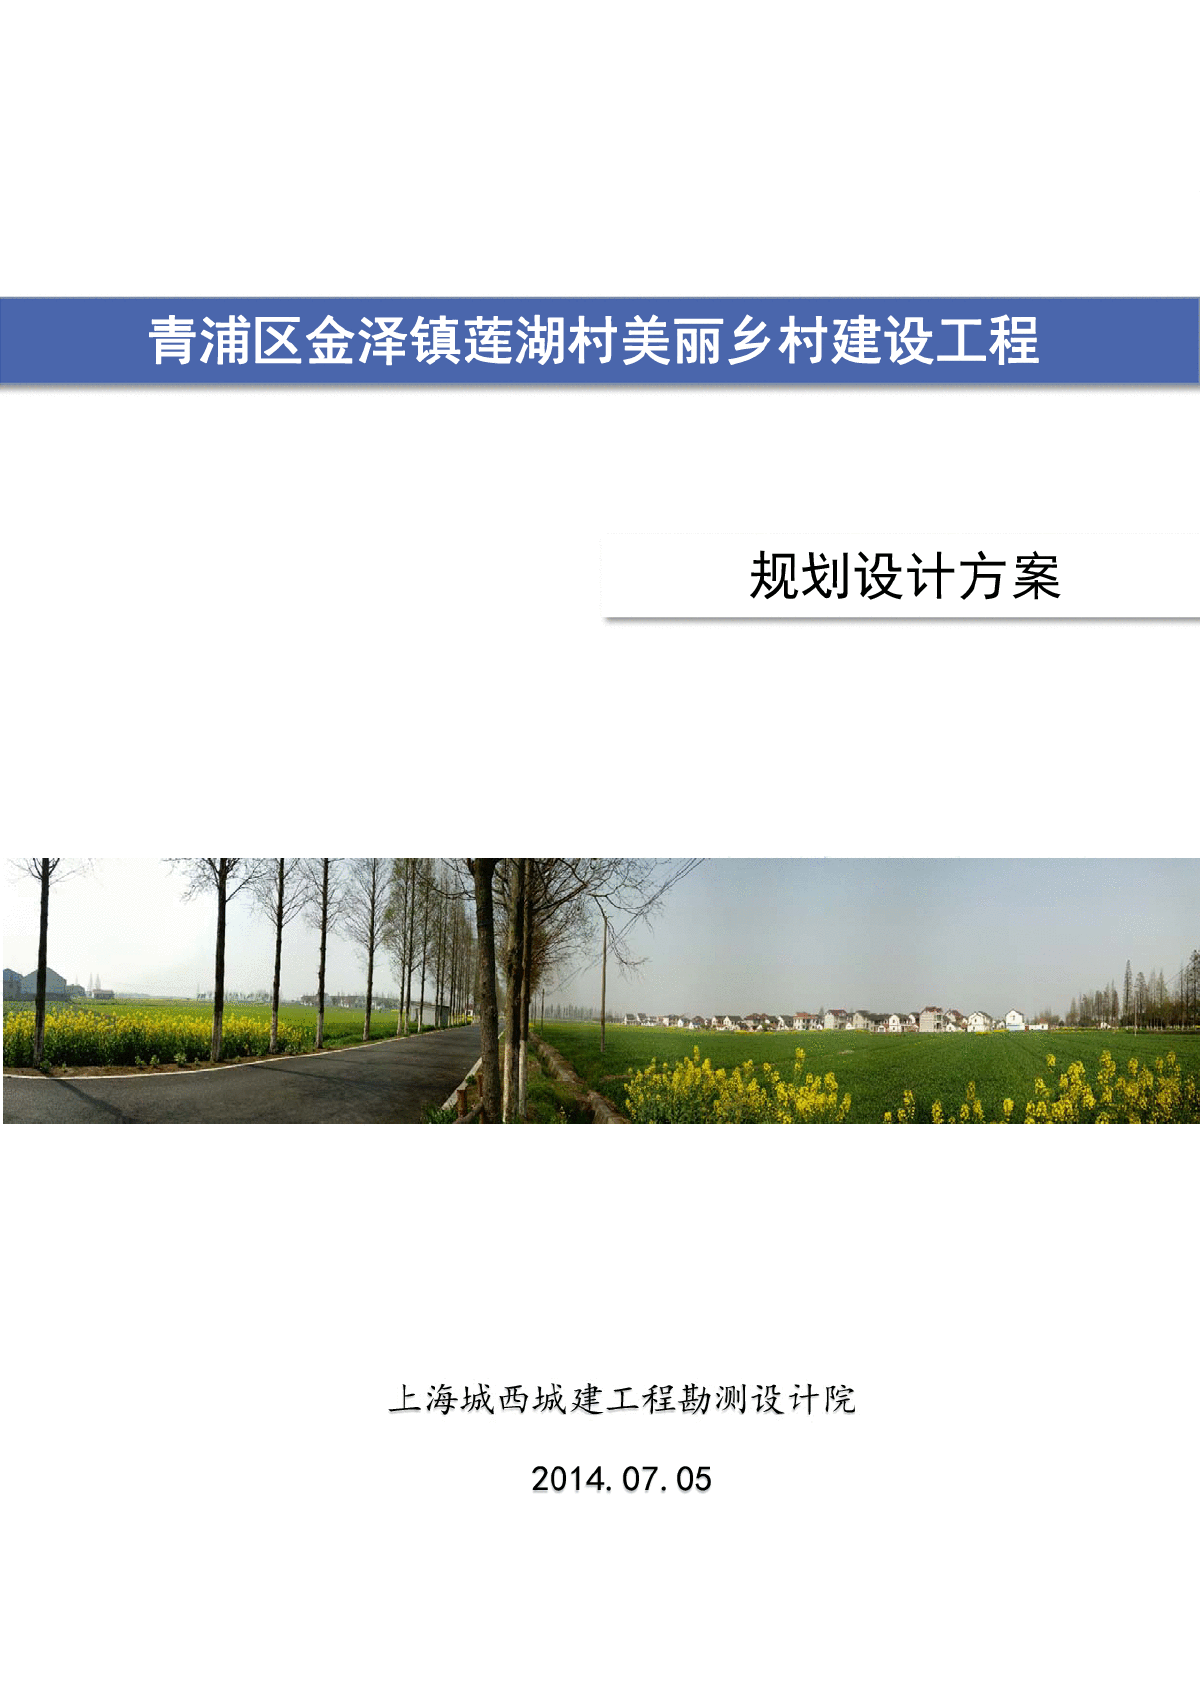 上海某镇美丽乡村改造规划